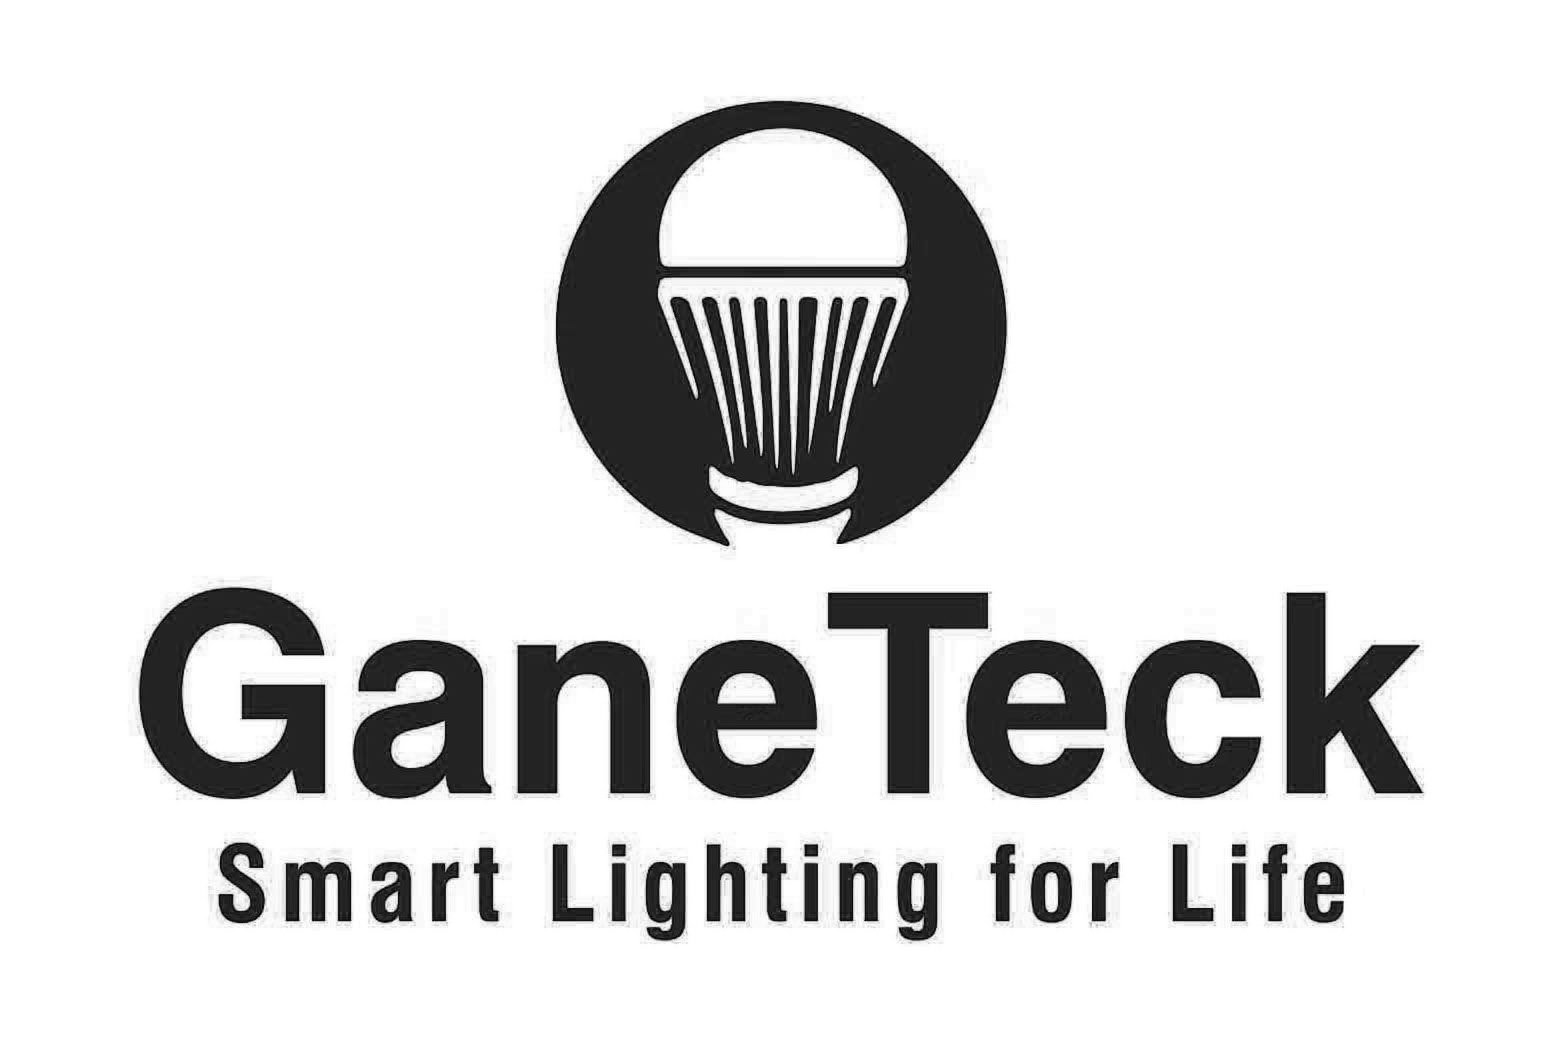  GANETECK SMART LIGHTING FOR LIFE